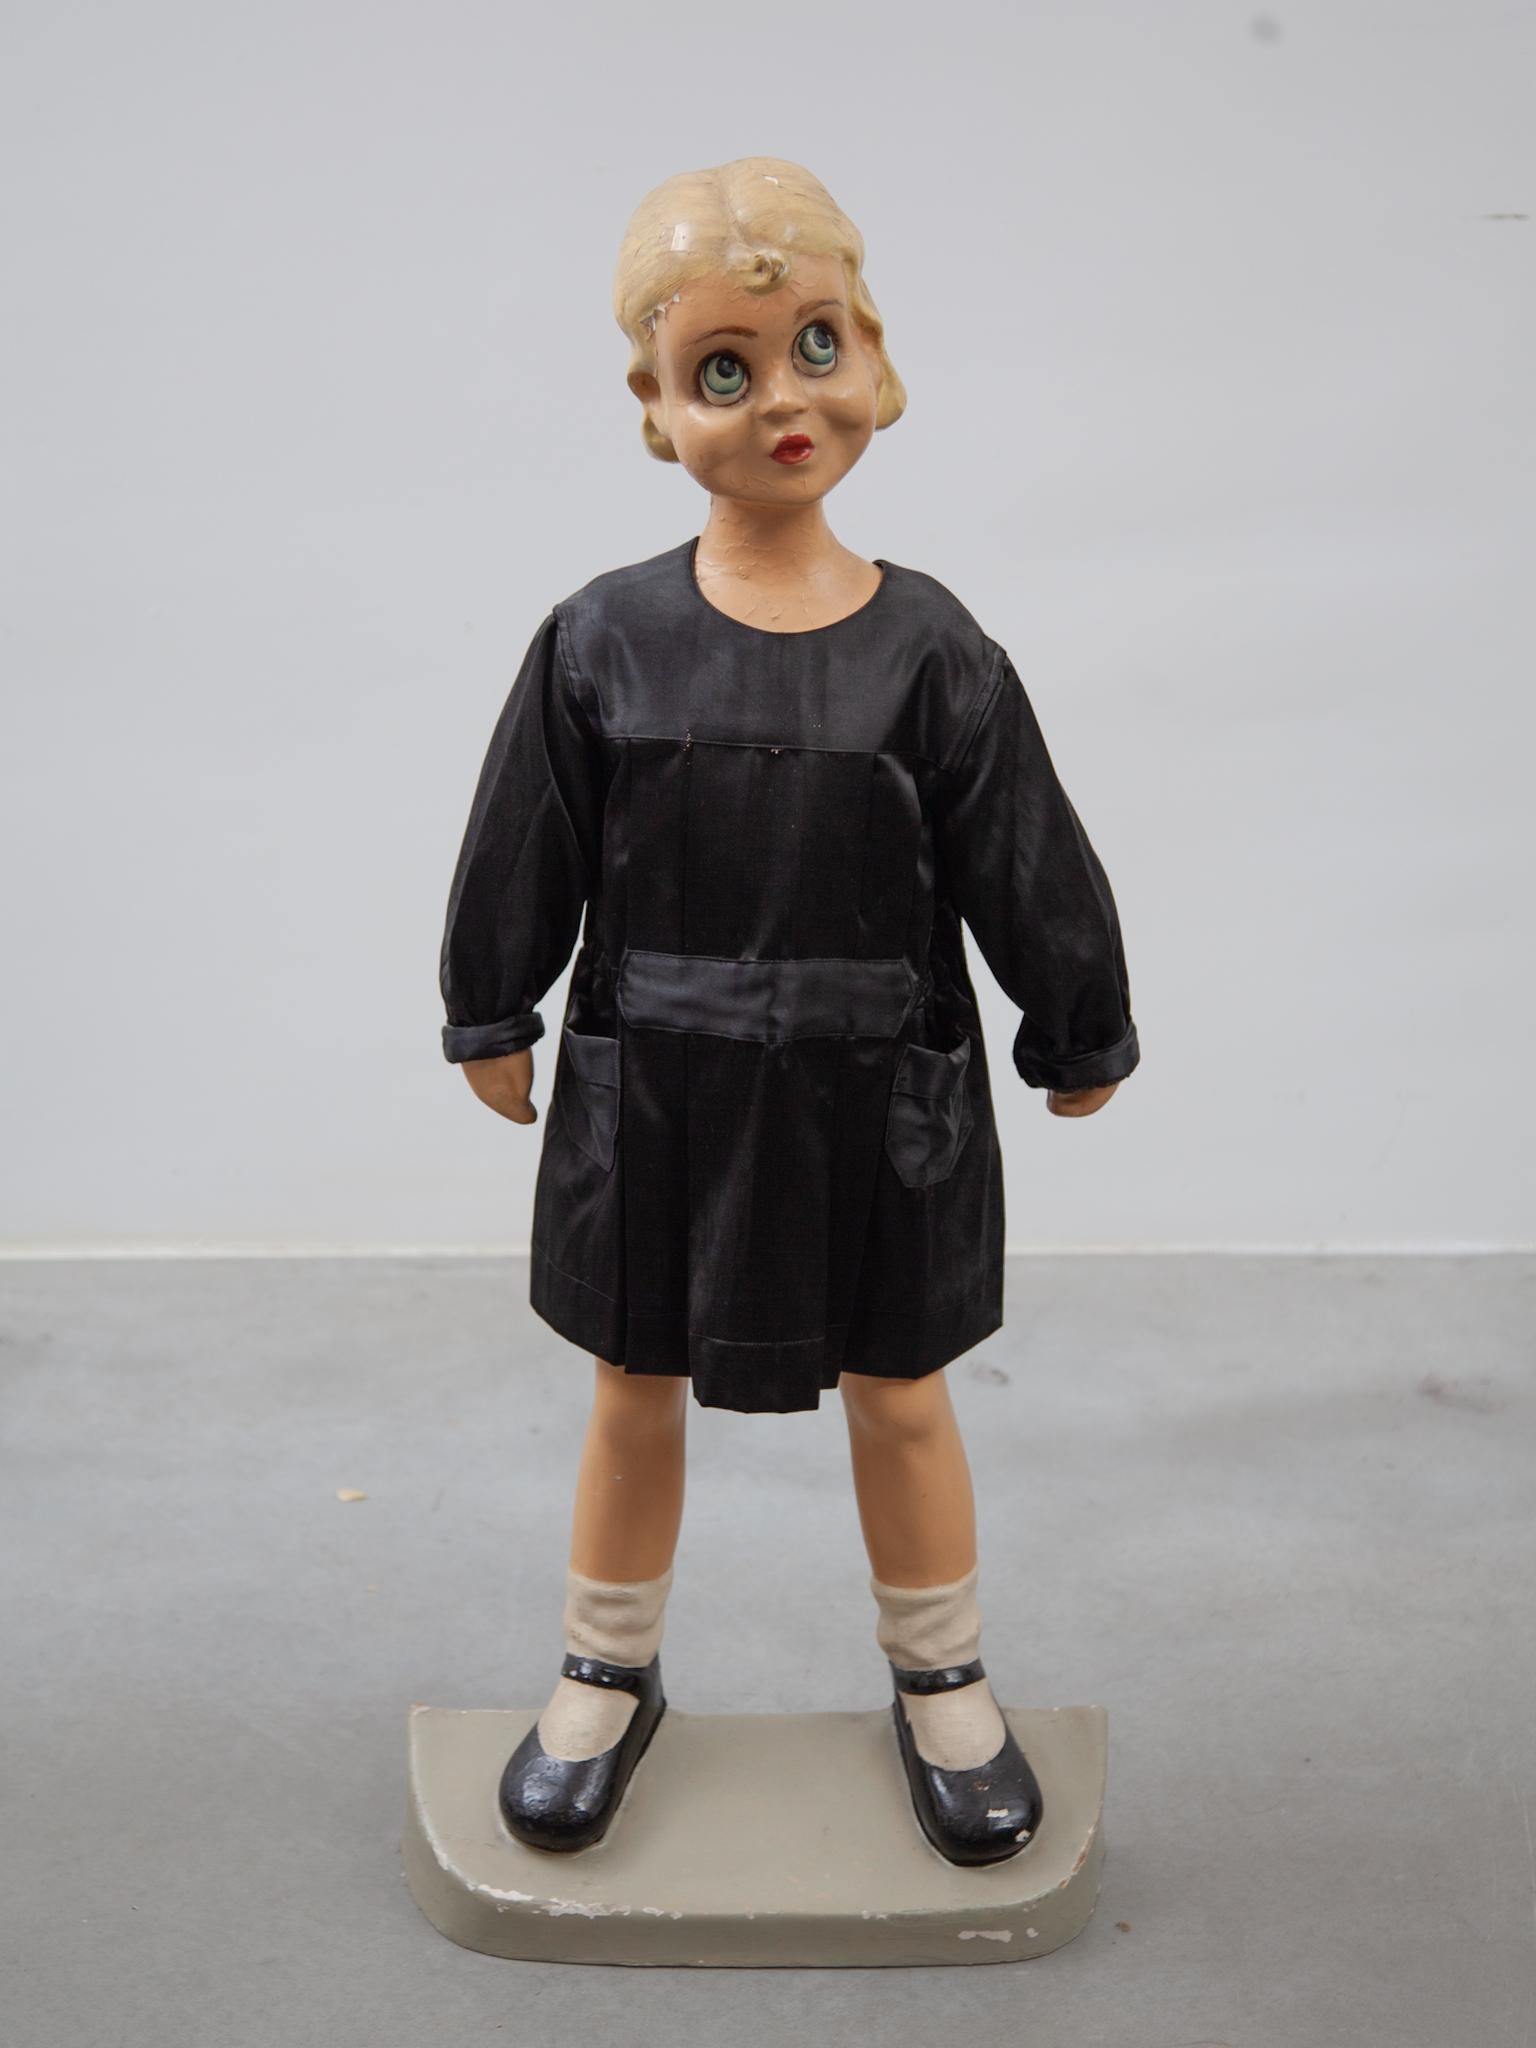 Original Schaufensterpuppe für Grundschulkleidung, sie trägt ein schwarzes Kleid als Beispiel für Kinderuniformen aus den 1950er Jahren.